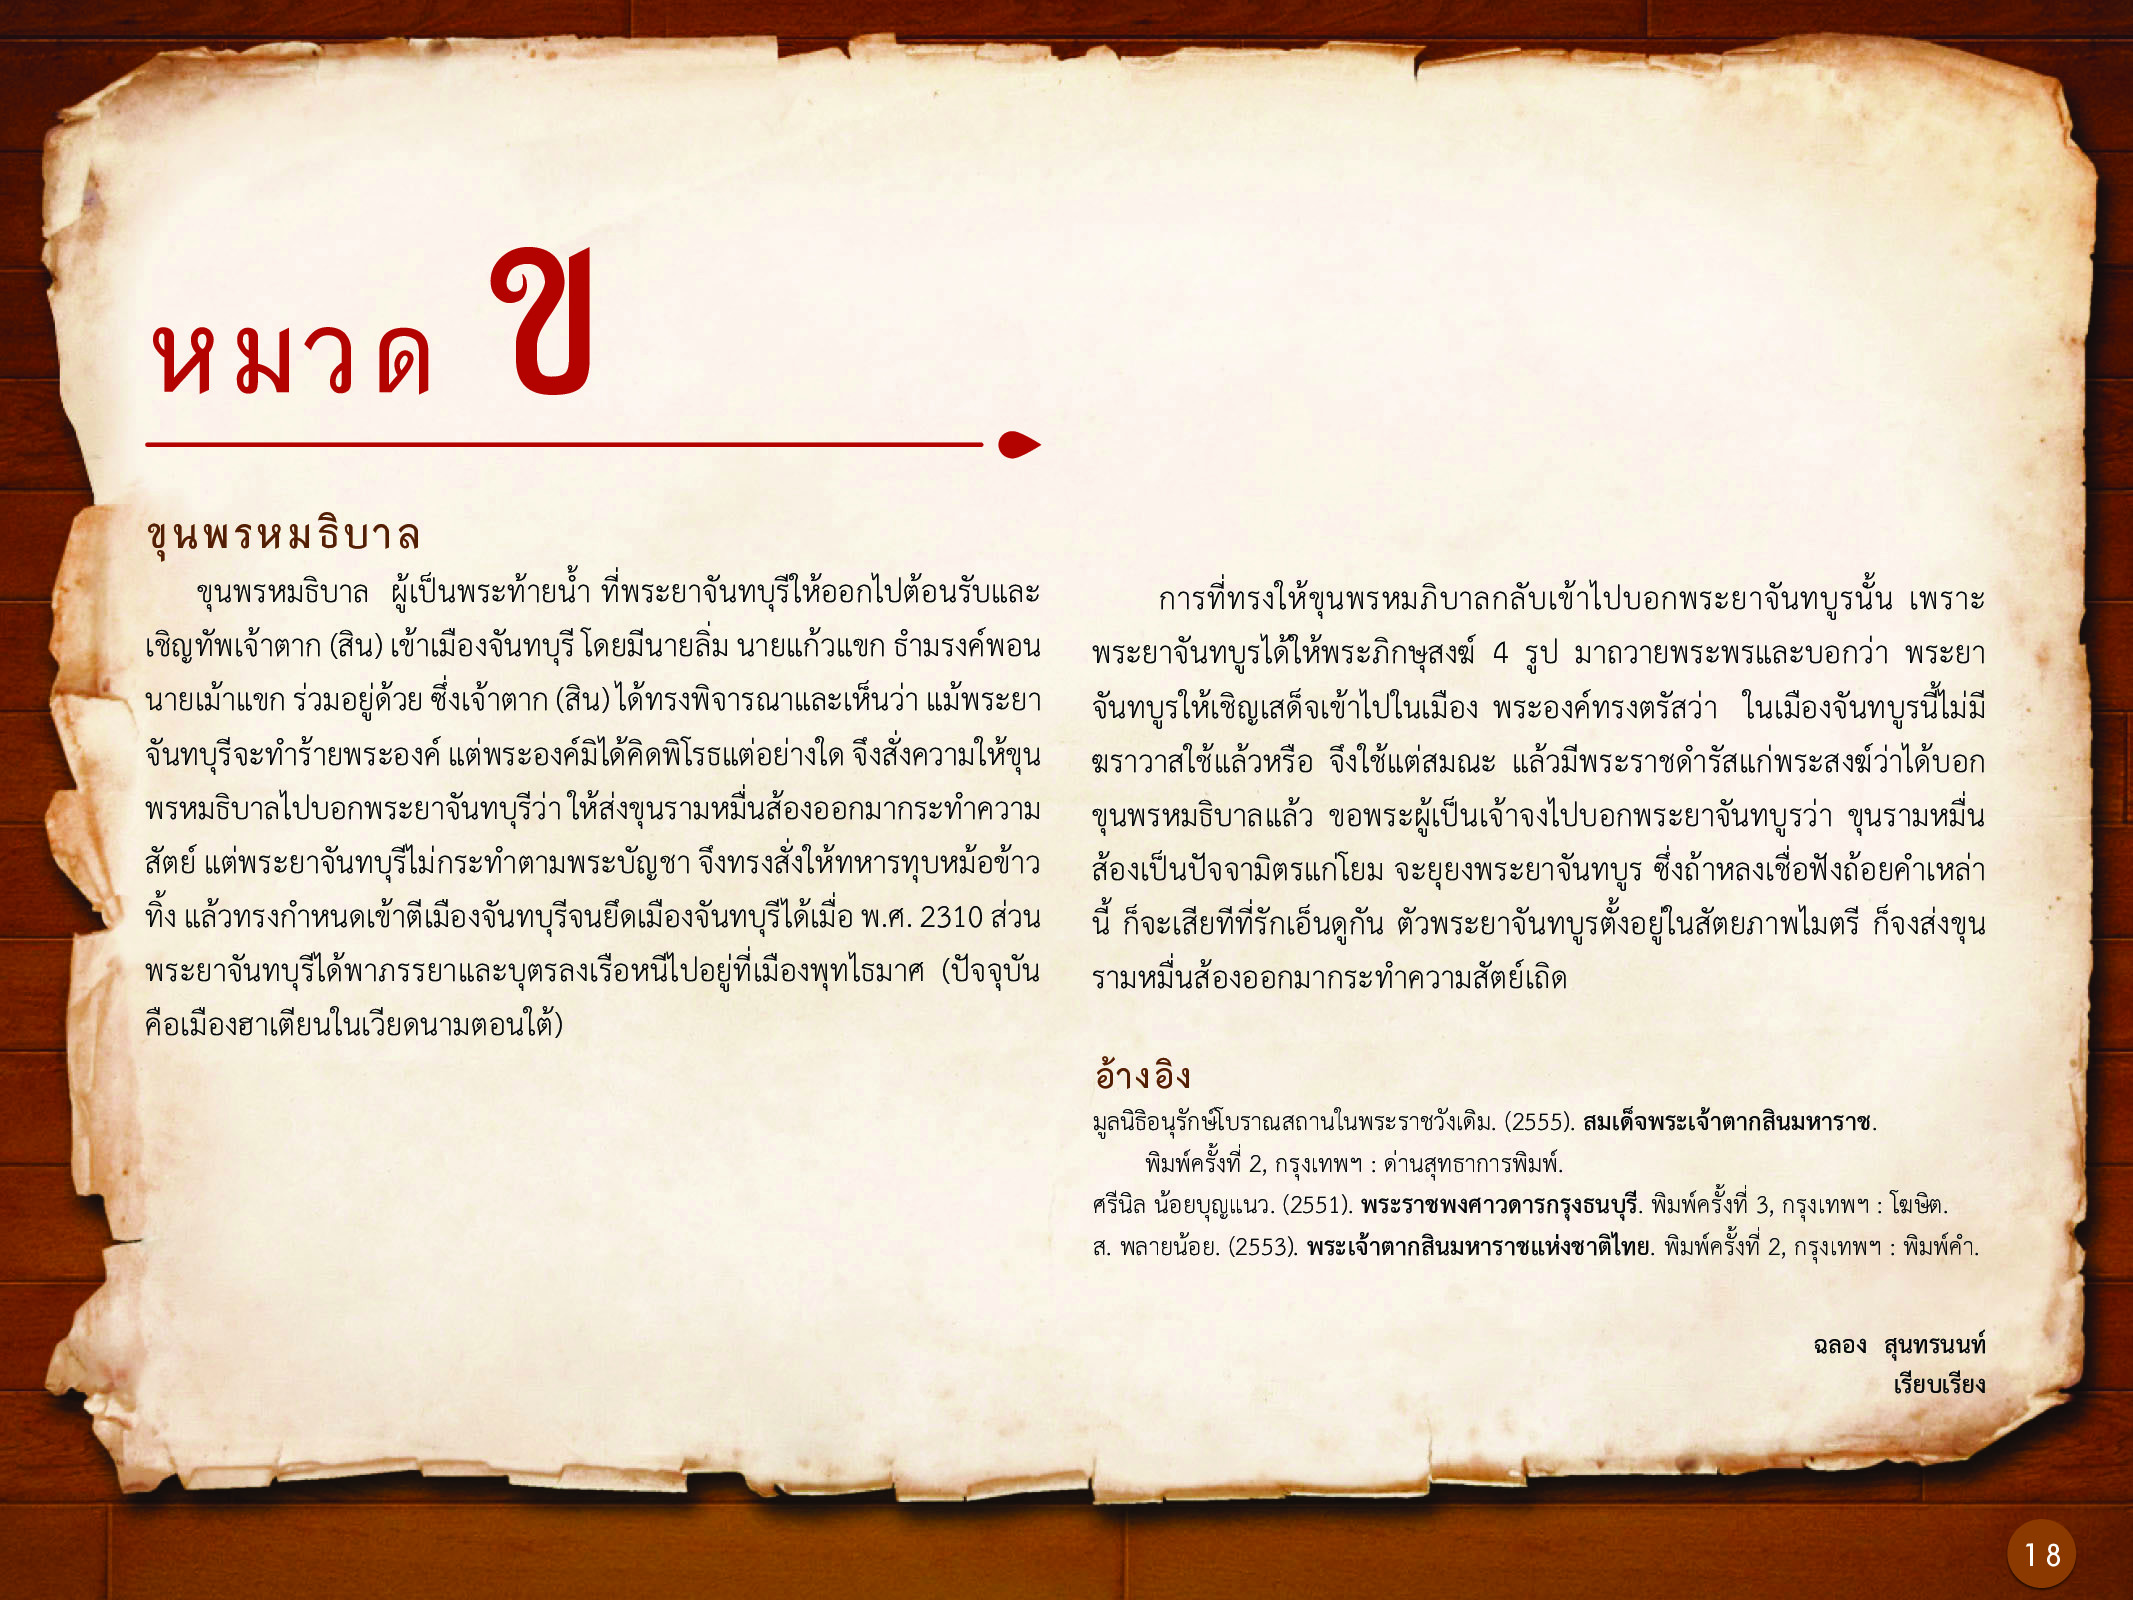 ประวัติศาสตร์กรุงธนบุรี ./images/history_dhonburi/18.jpg